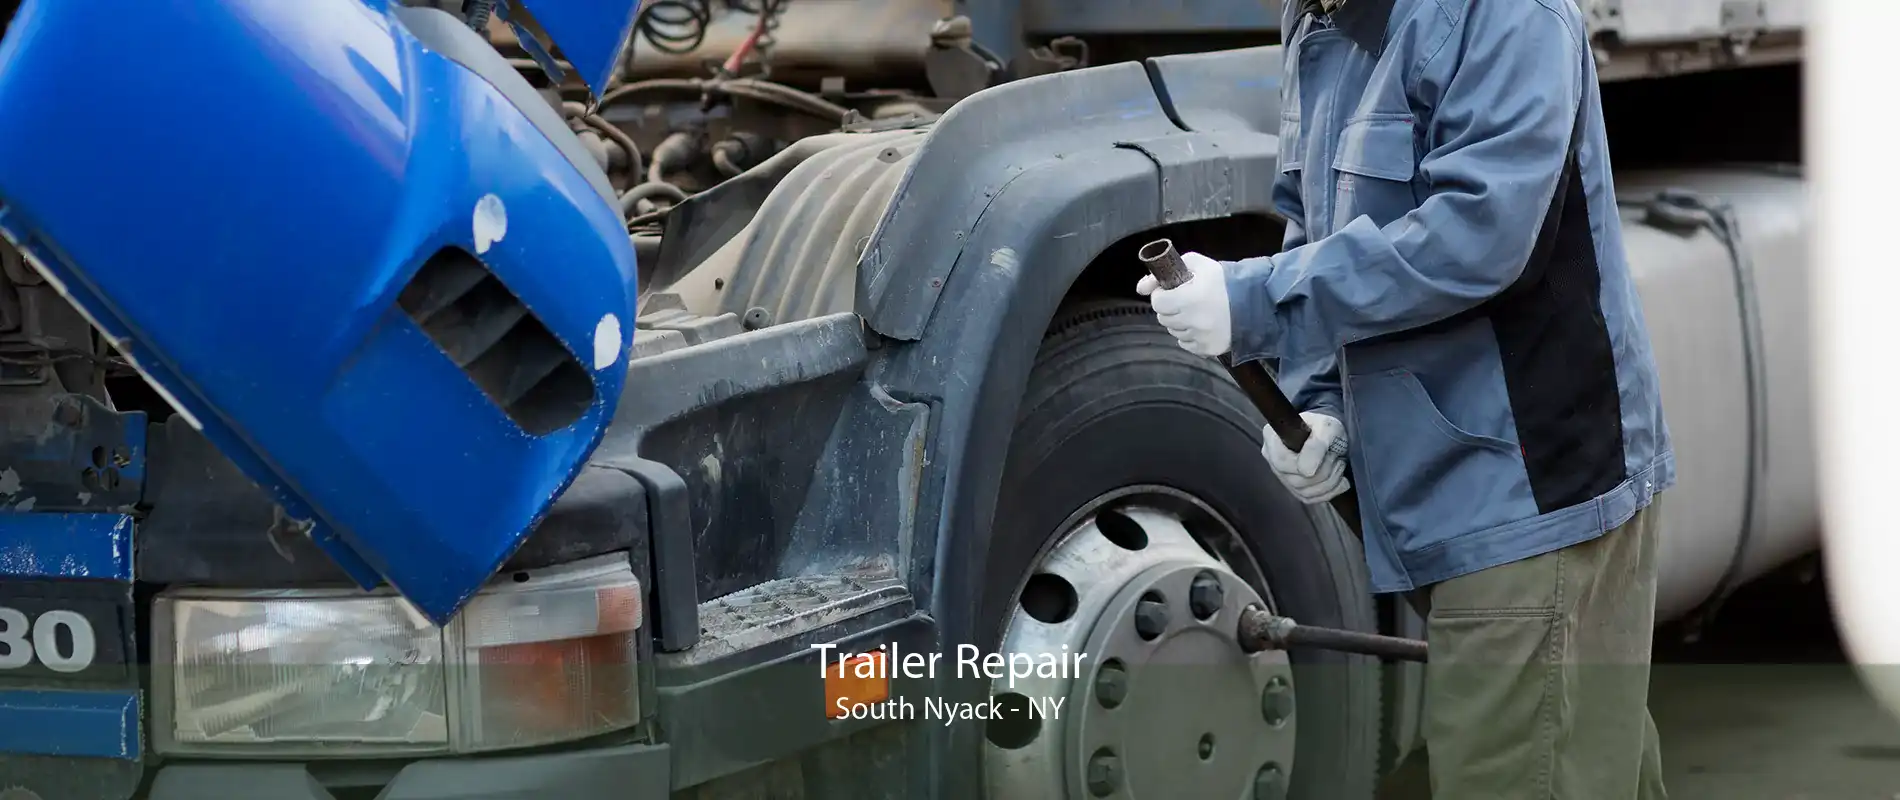 Trailer Repair South Nyack - NY